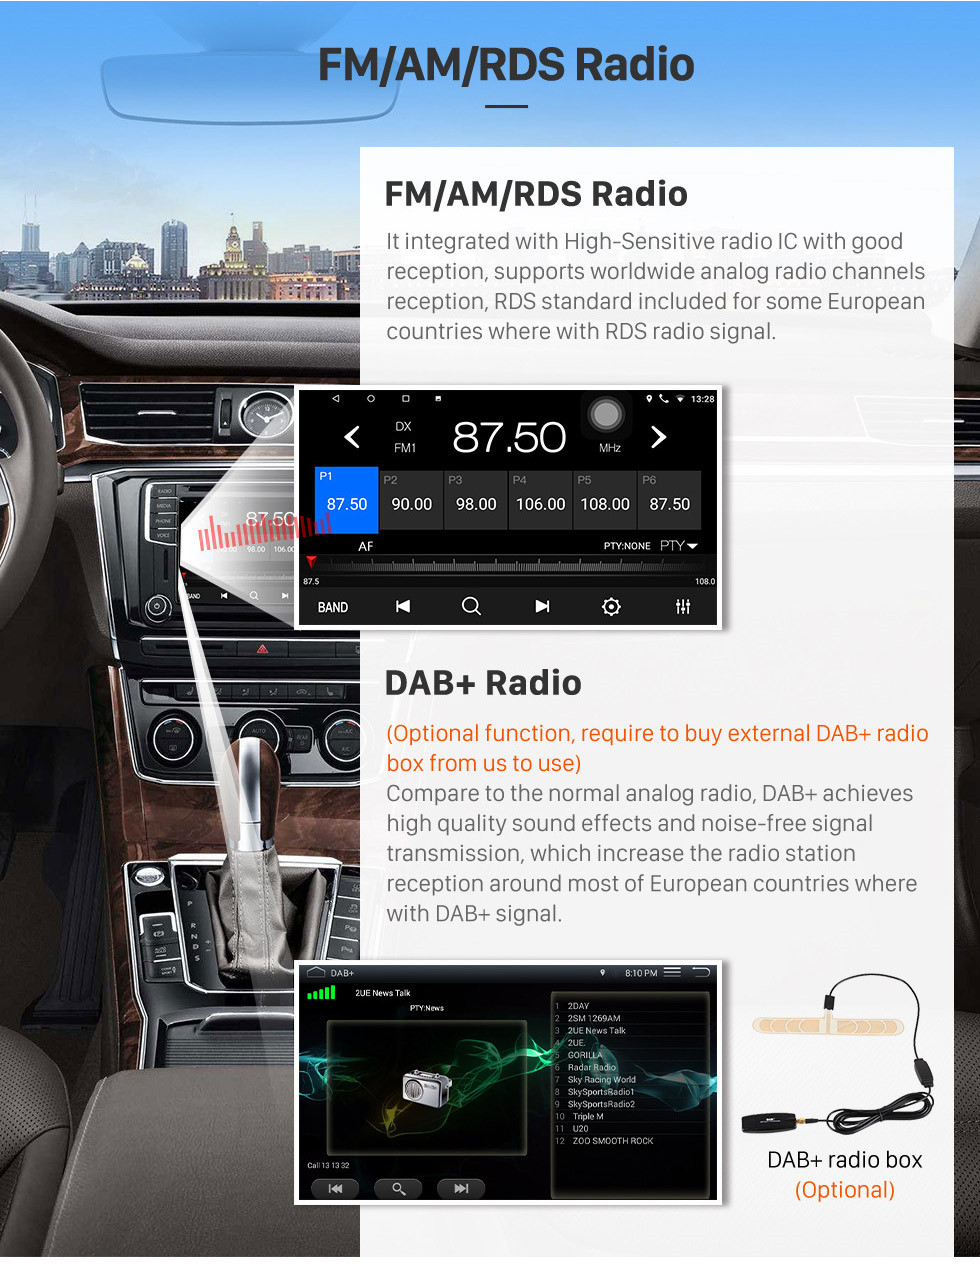 Seicane 2010 Fiat Stilo Android 10.0 HD Touchscreen 9 polegadas AUX Bluetooth WIFI USB GPS Navegação por rádio suporte OBD2 SWC Carplay DVR